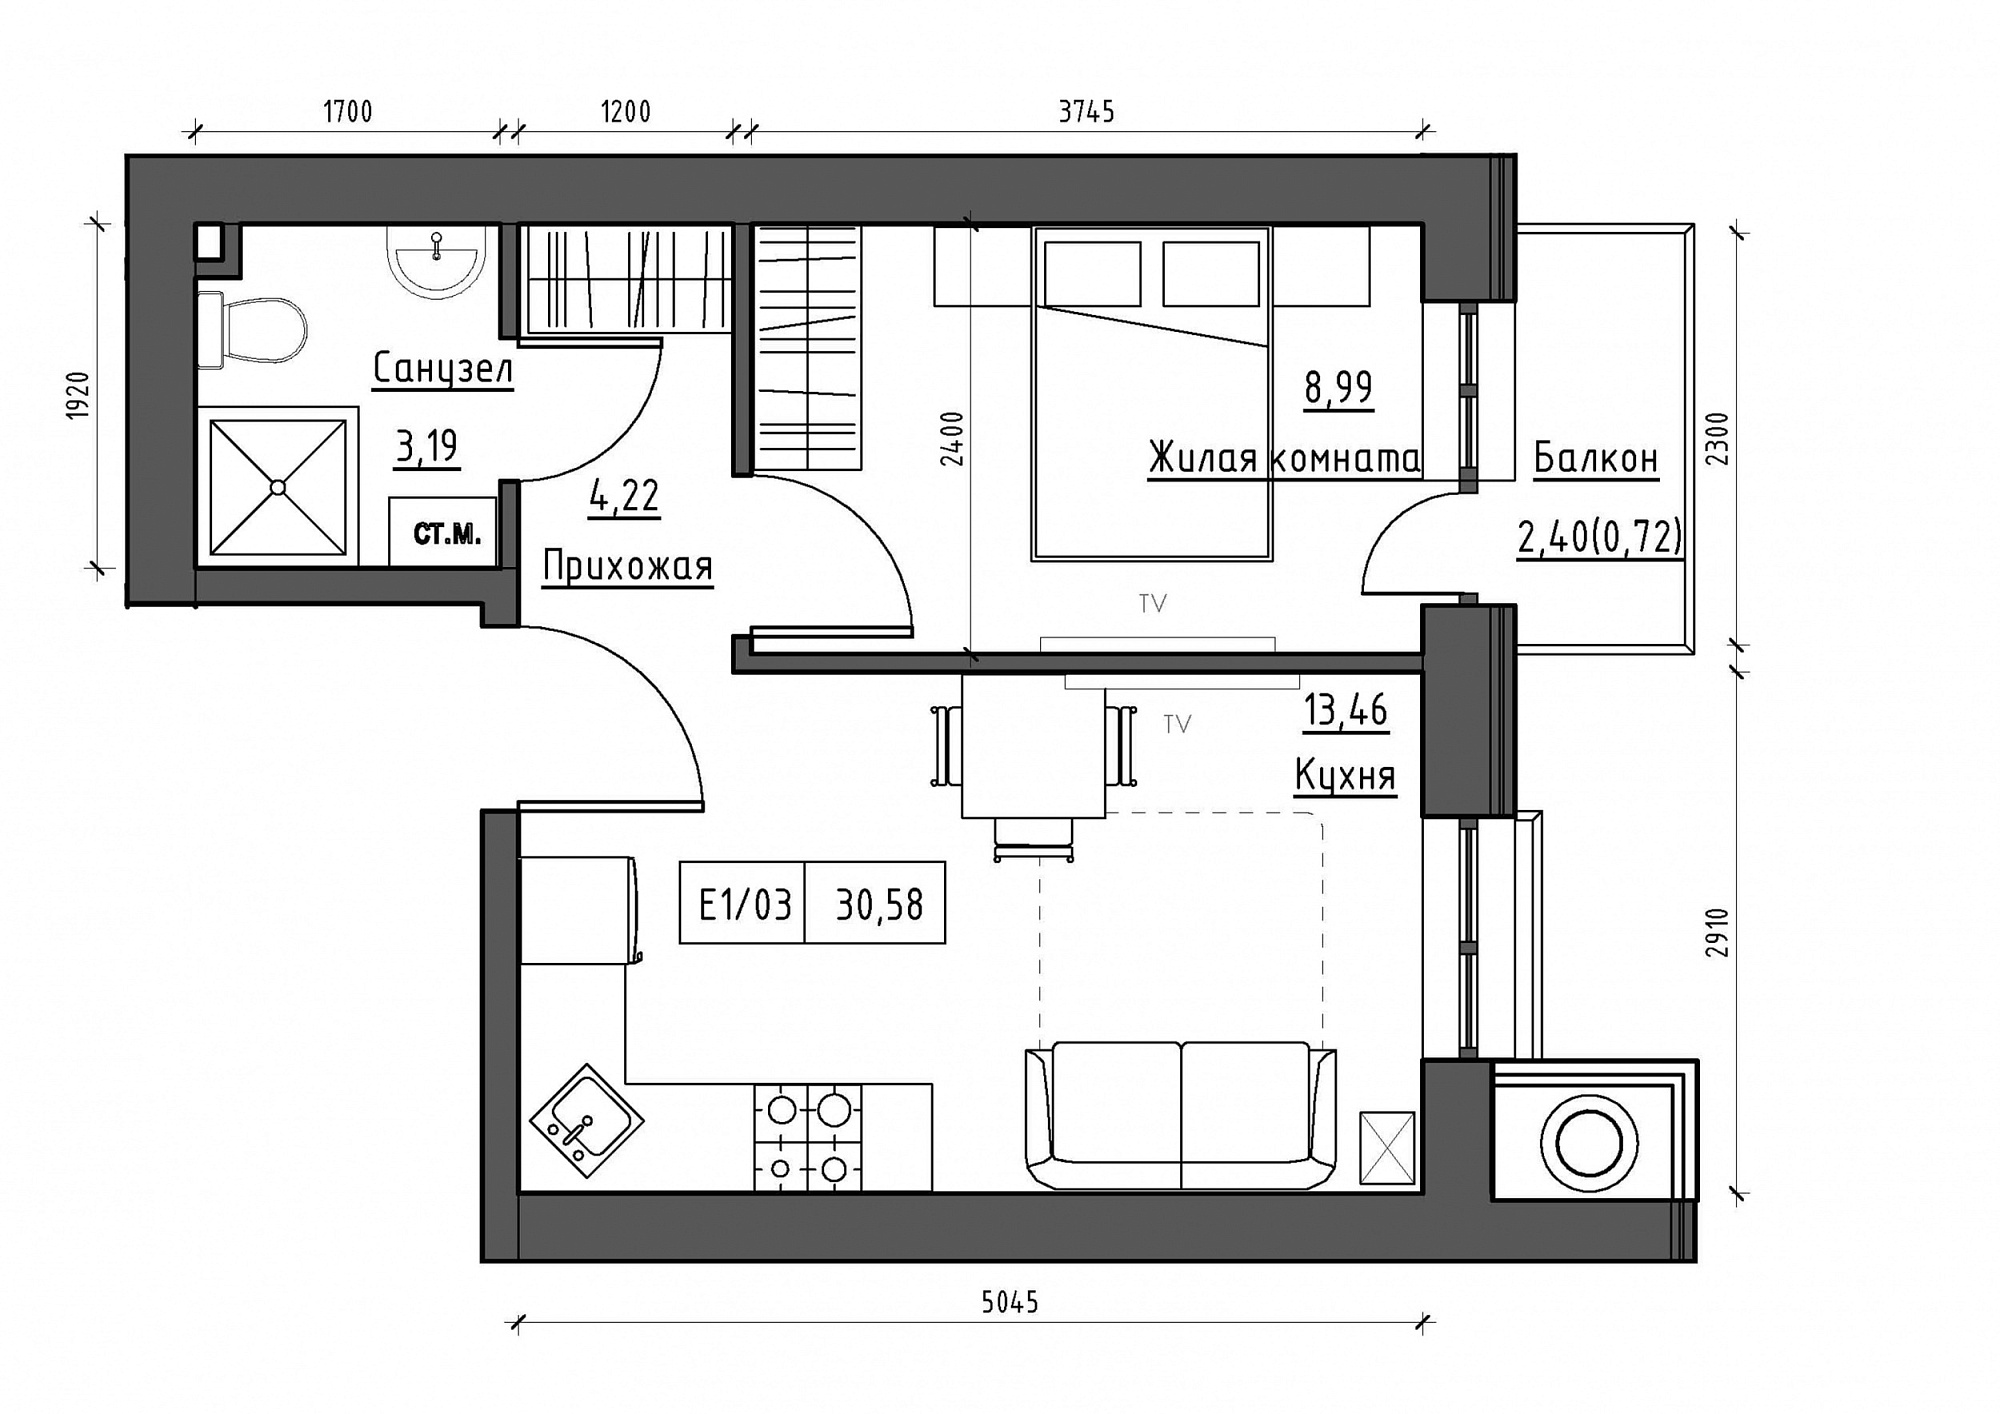 Планування 1-к квартира площею 30.58м2, KS-012-04/0013.